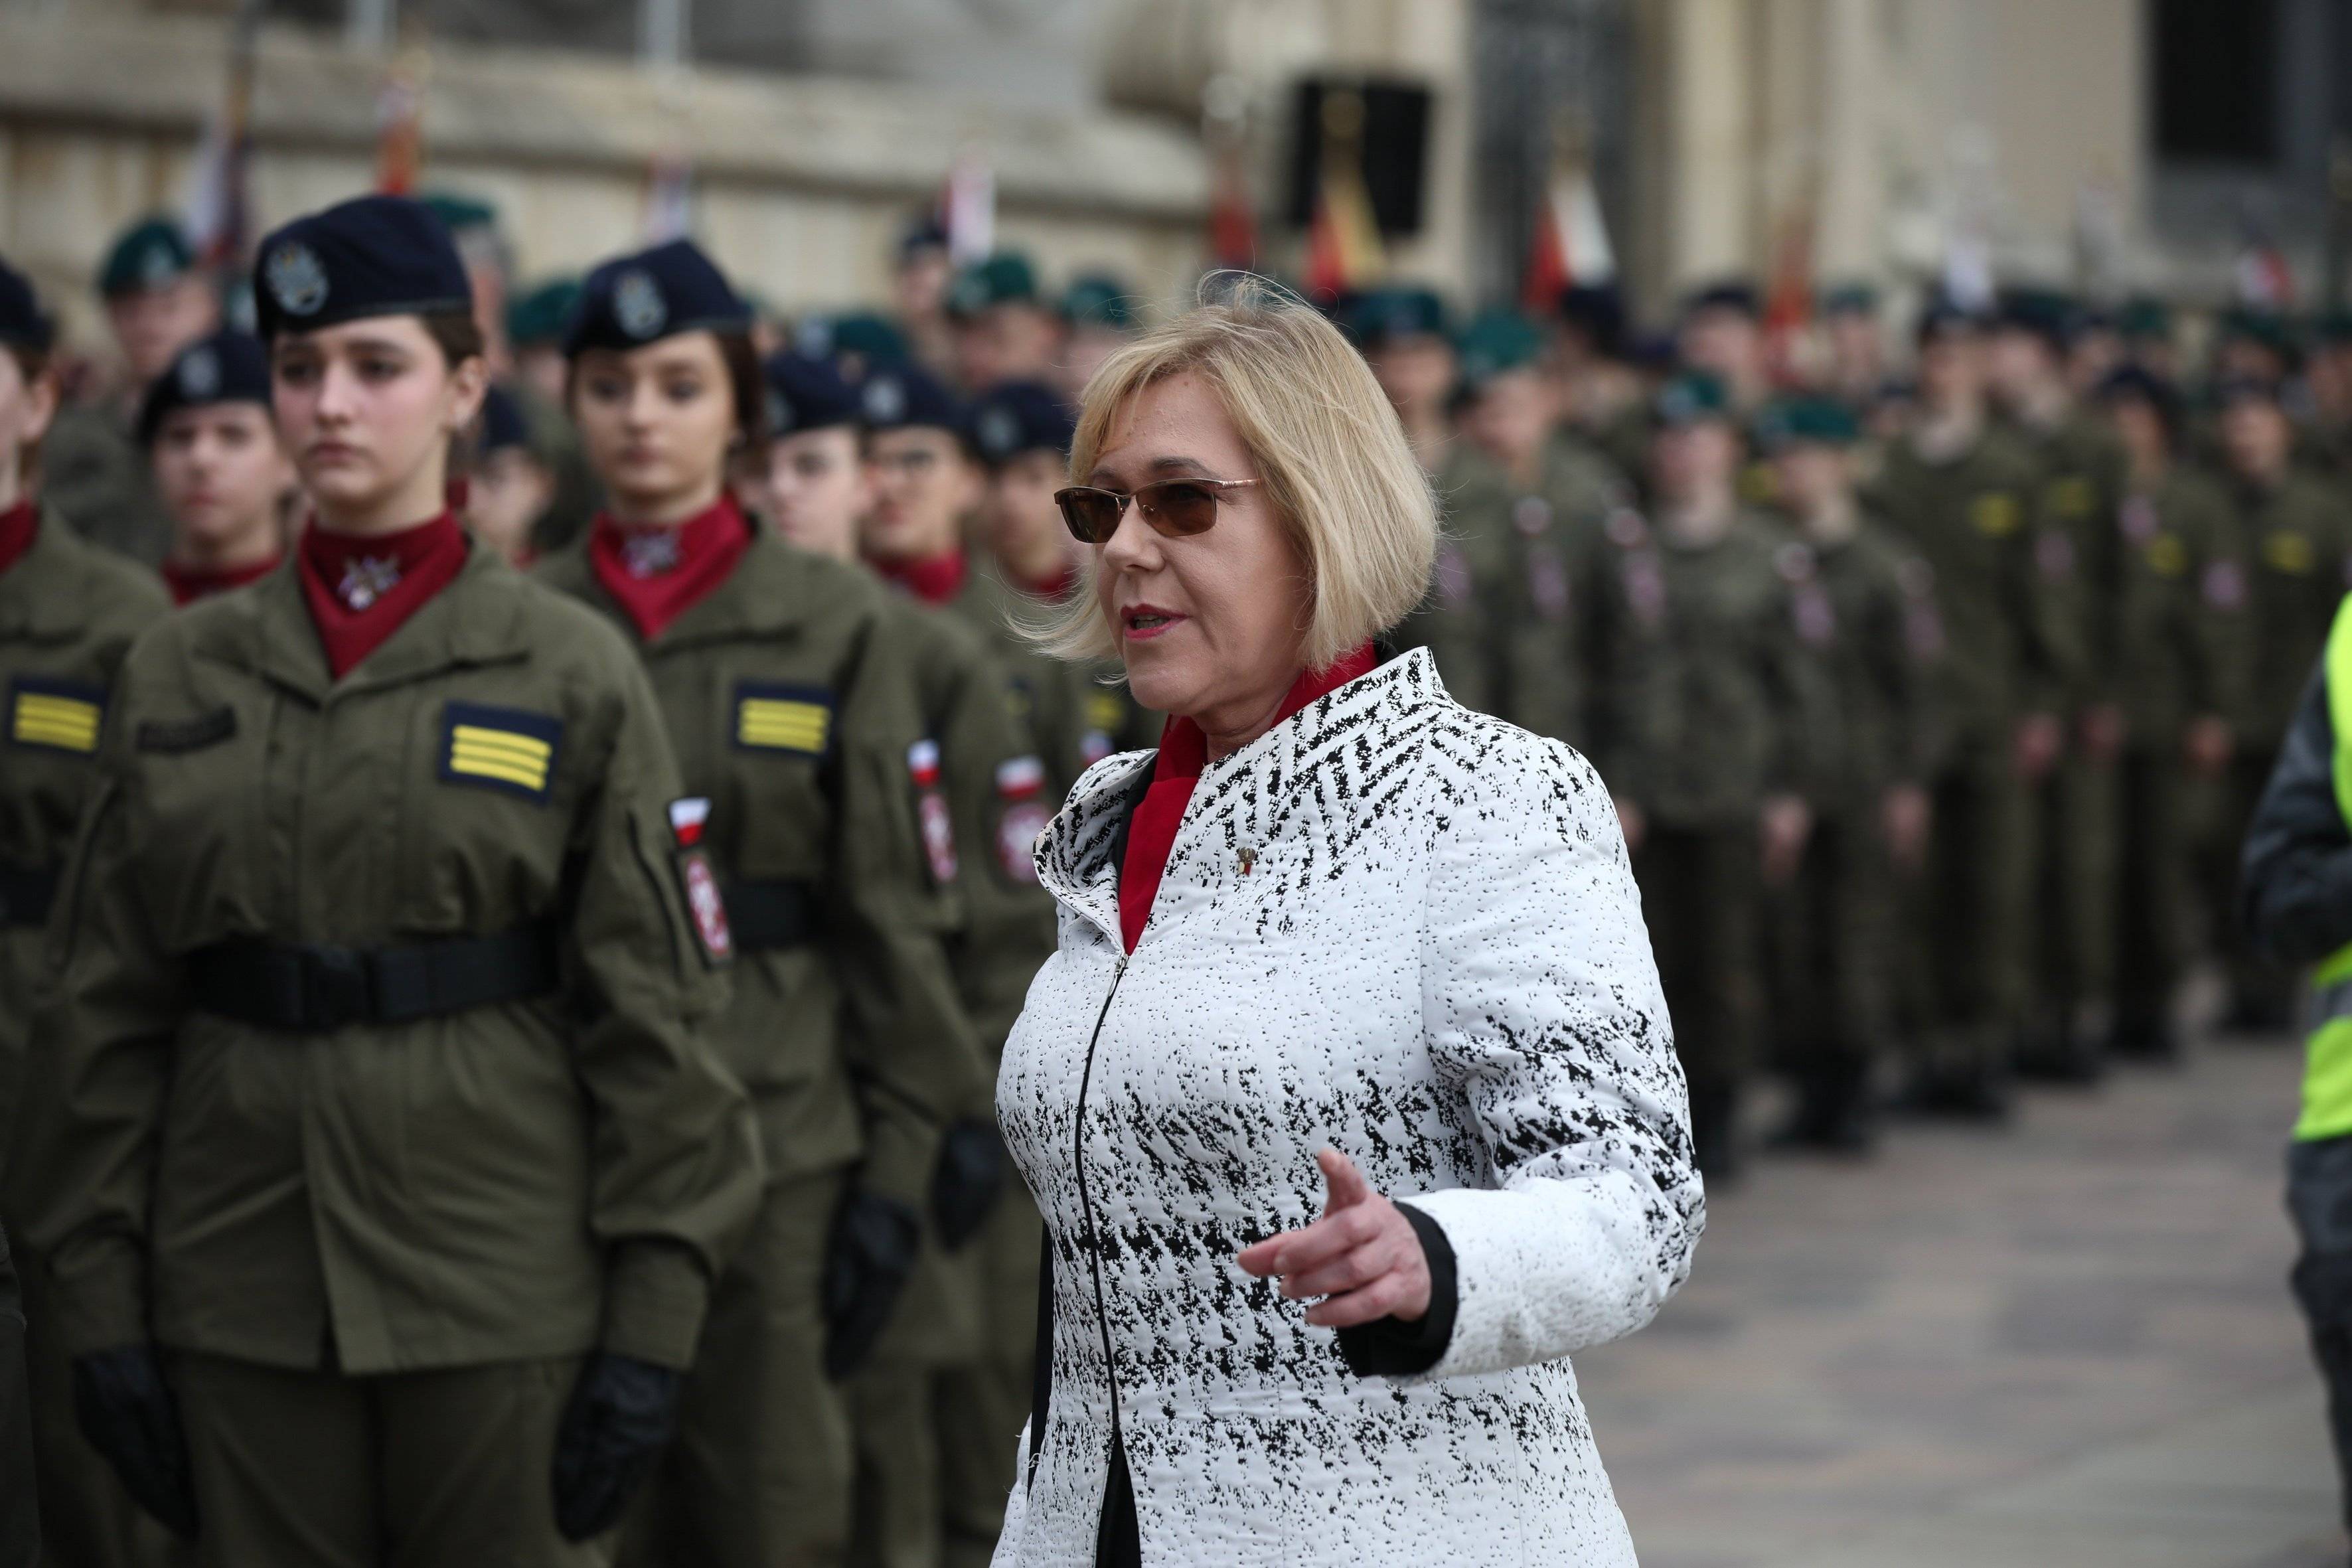 Kobieta w jasnej kurtce i ciemnych okularach stoi obok młodzieży w wojskowych mundurach